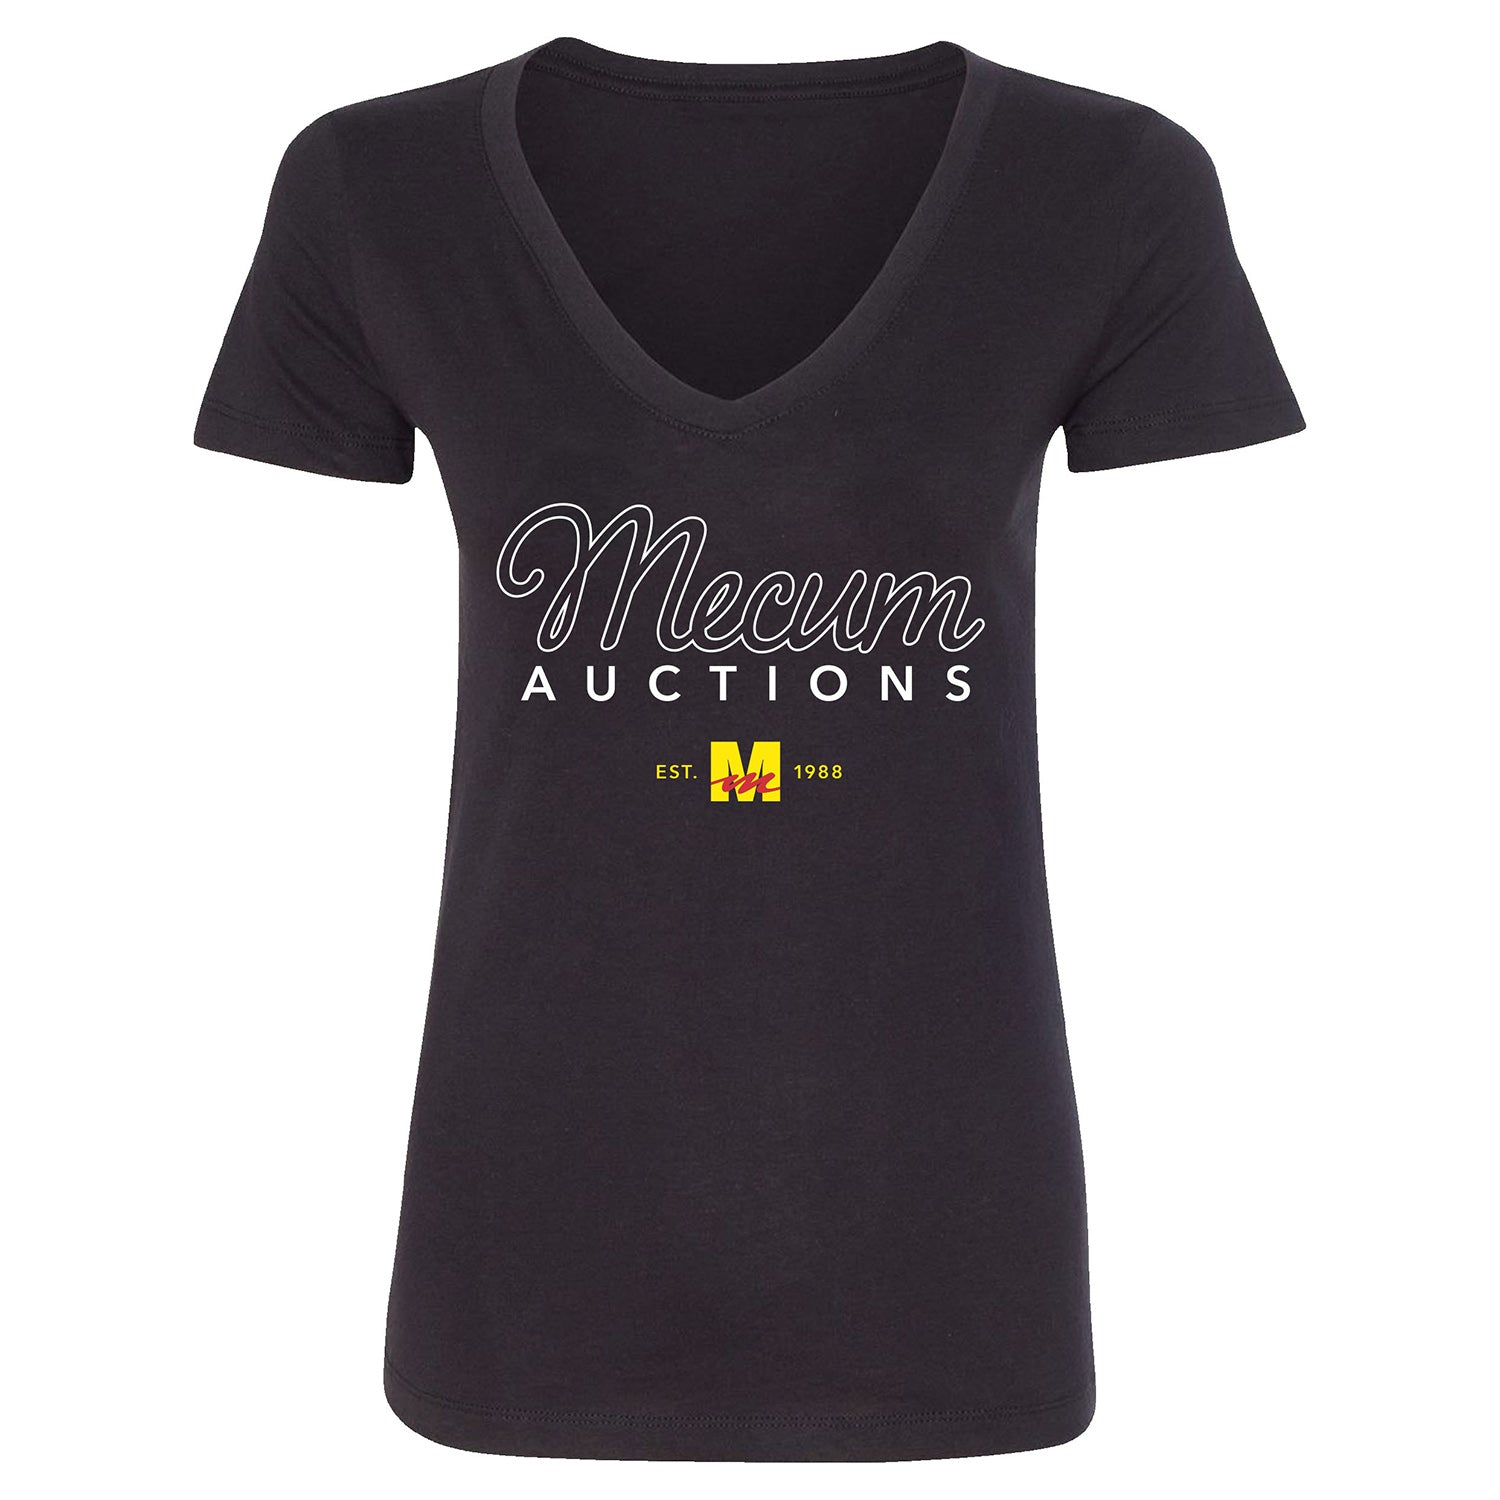 Mecum Auctions Ladies Black Script Text V Neck T-Shirt - Front View